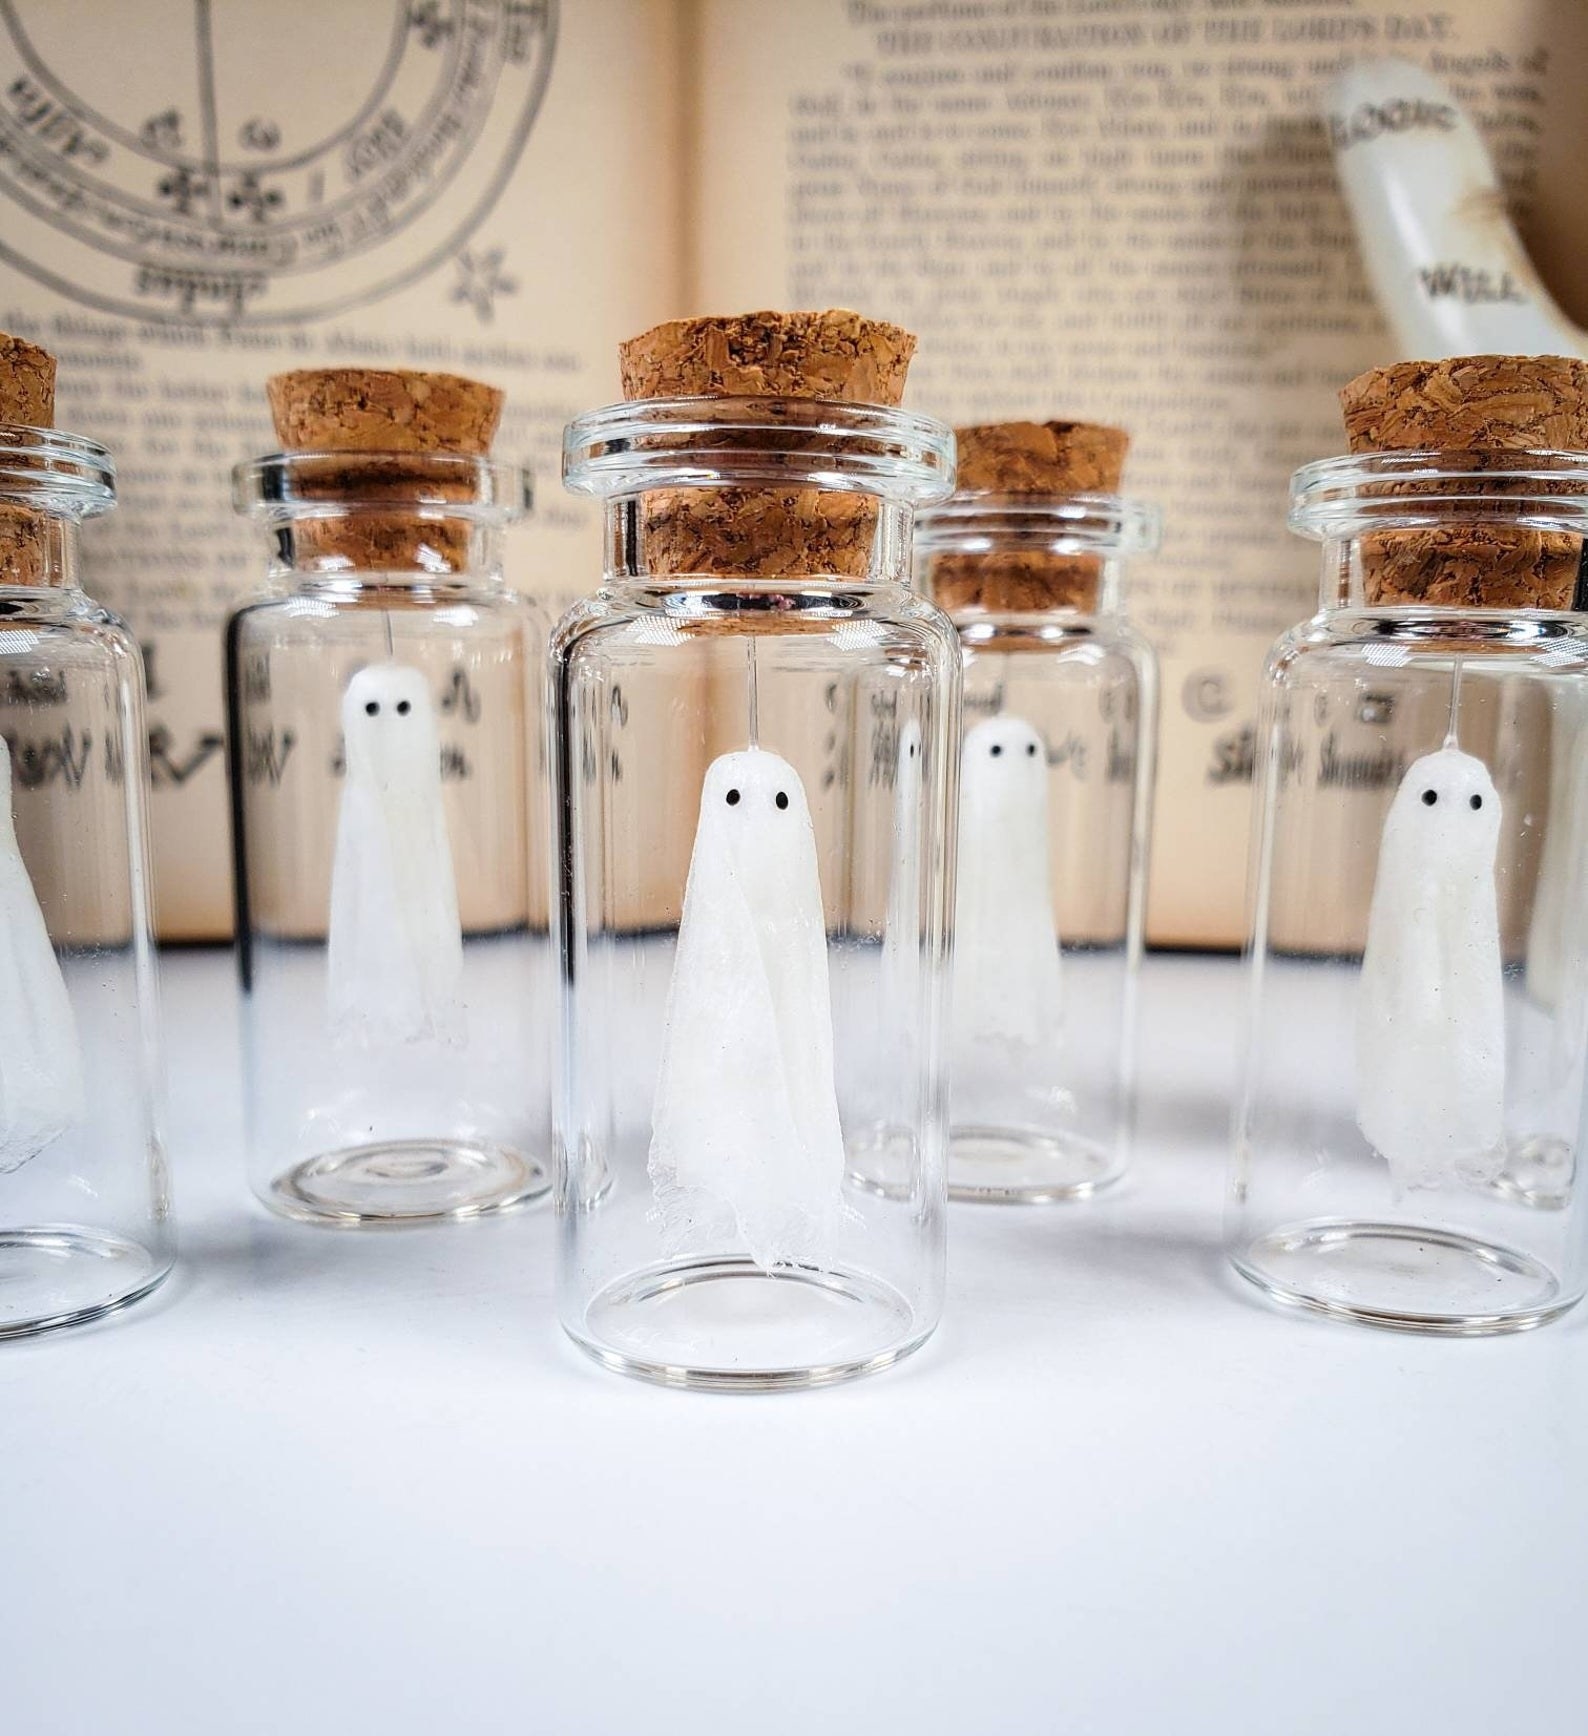 Miniature ghost in a bottle